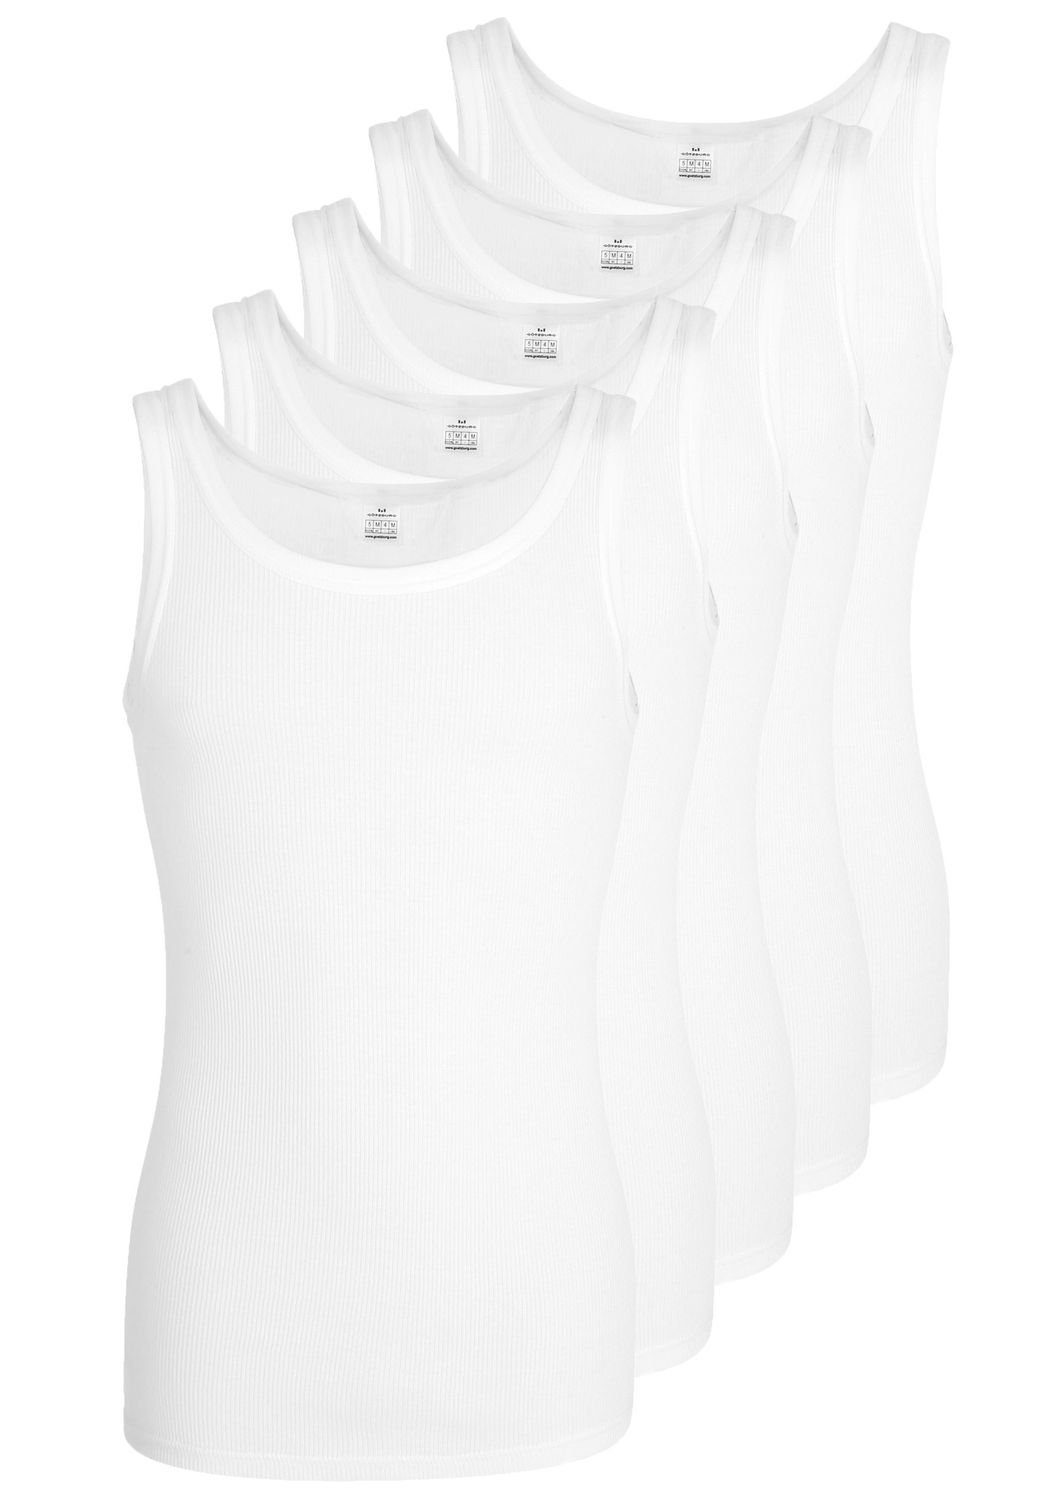 GÖTZBURG Unterhemd Doppelripp (Mehrpack, 5-St., 5 Stück) ohne Seitennähte, Pure Cotton